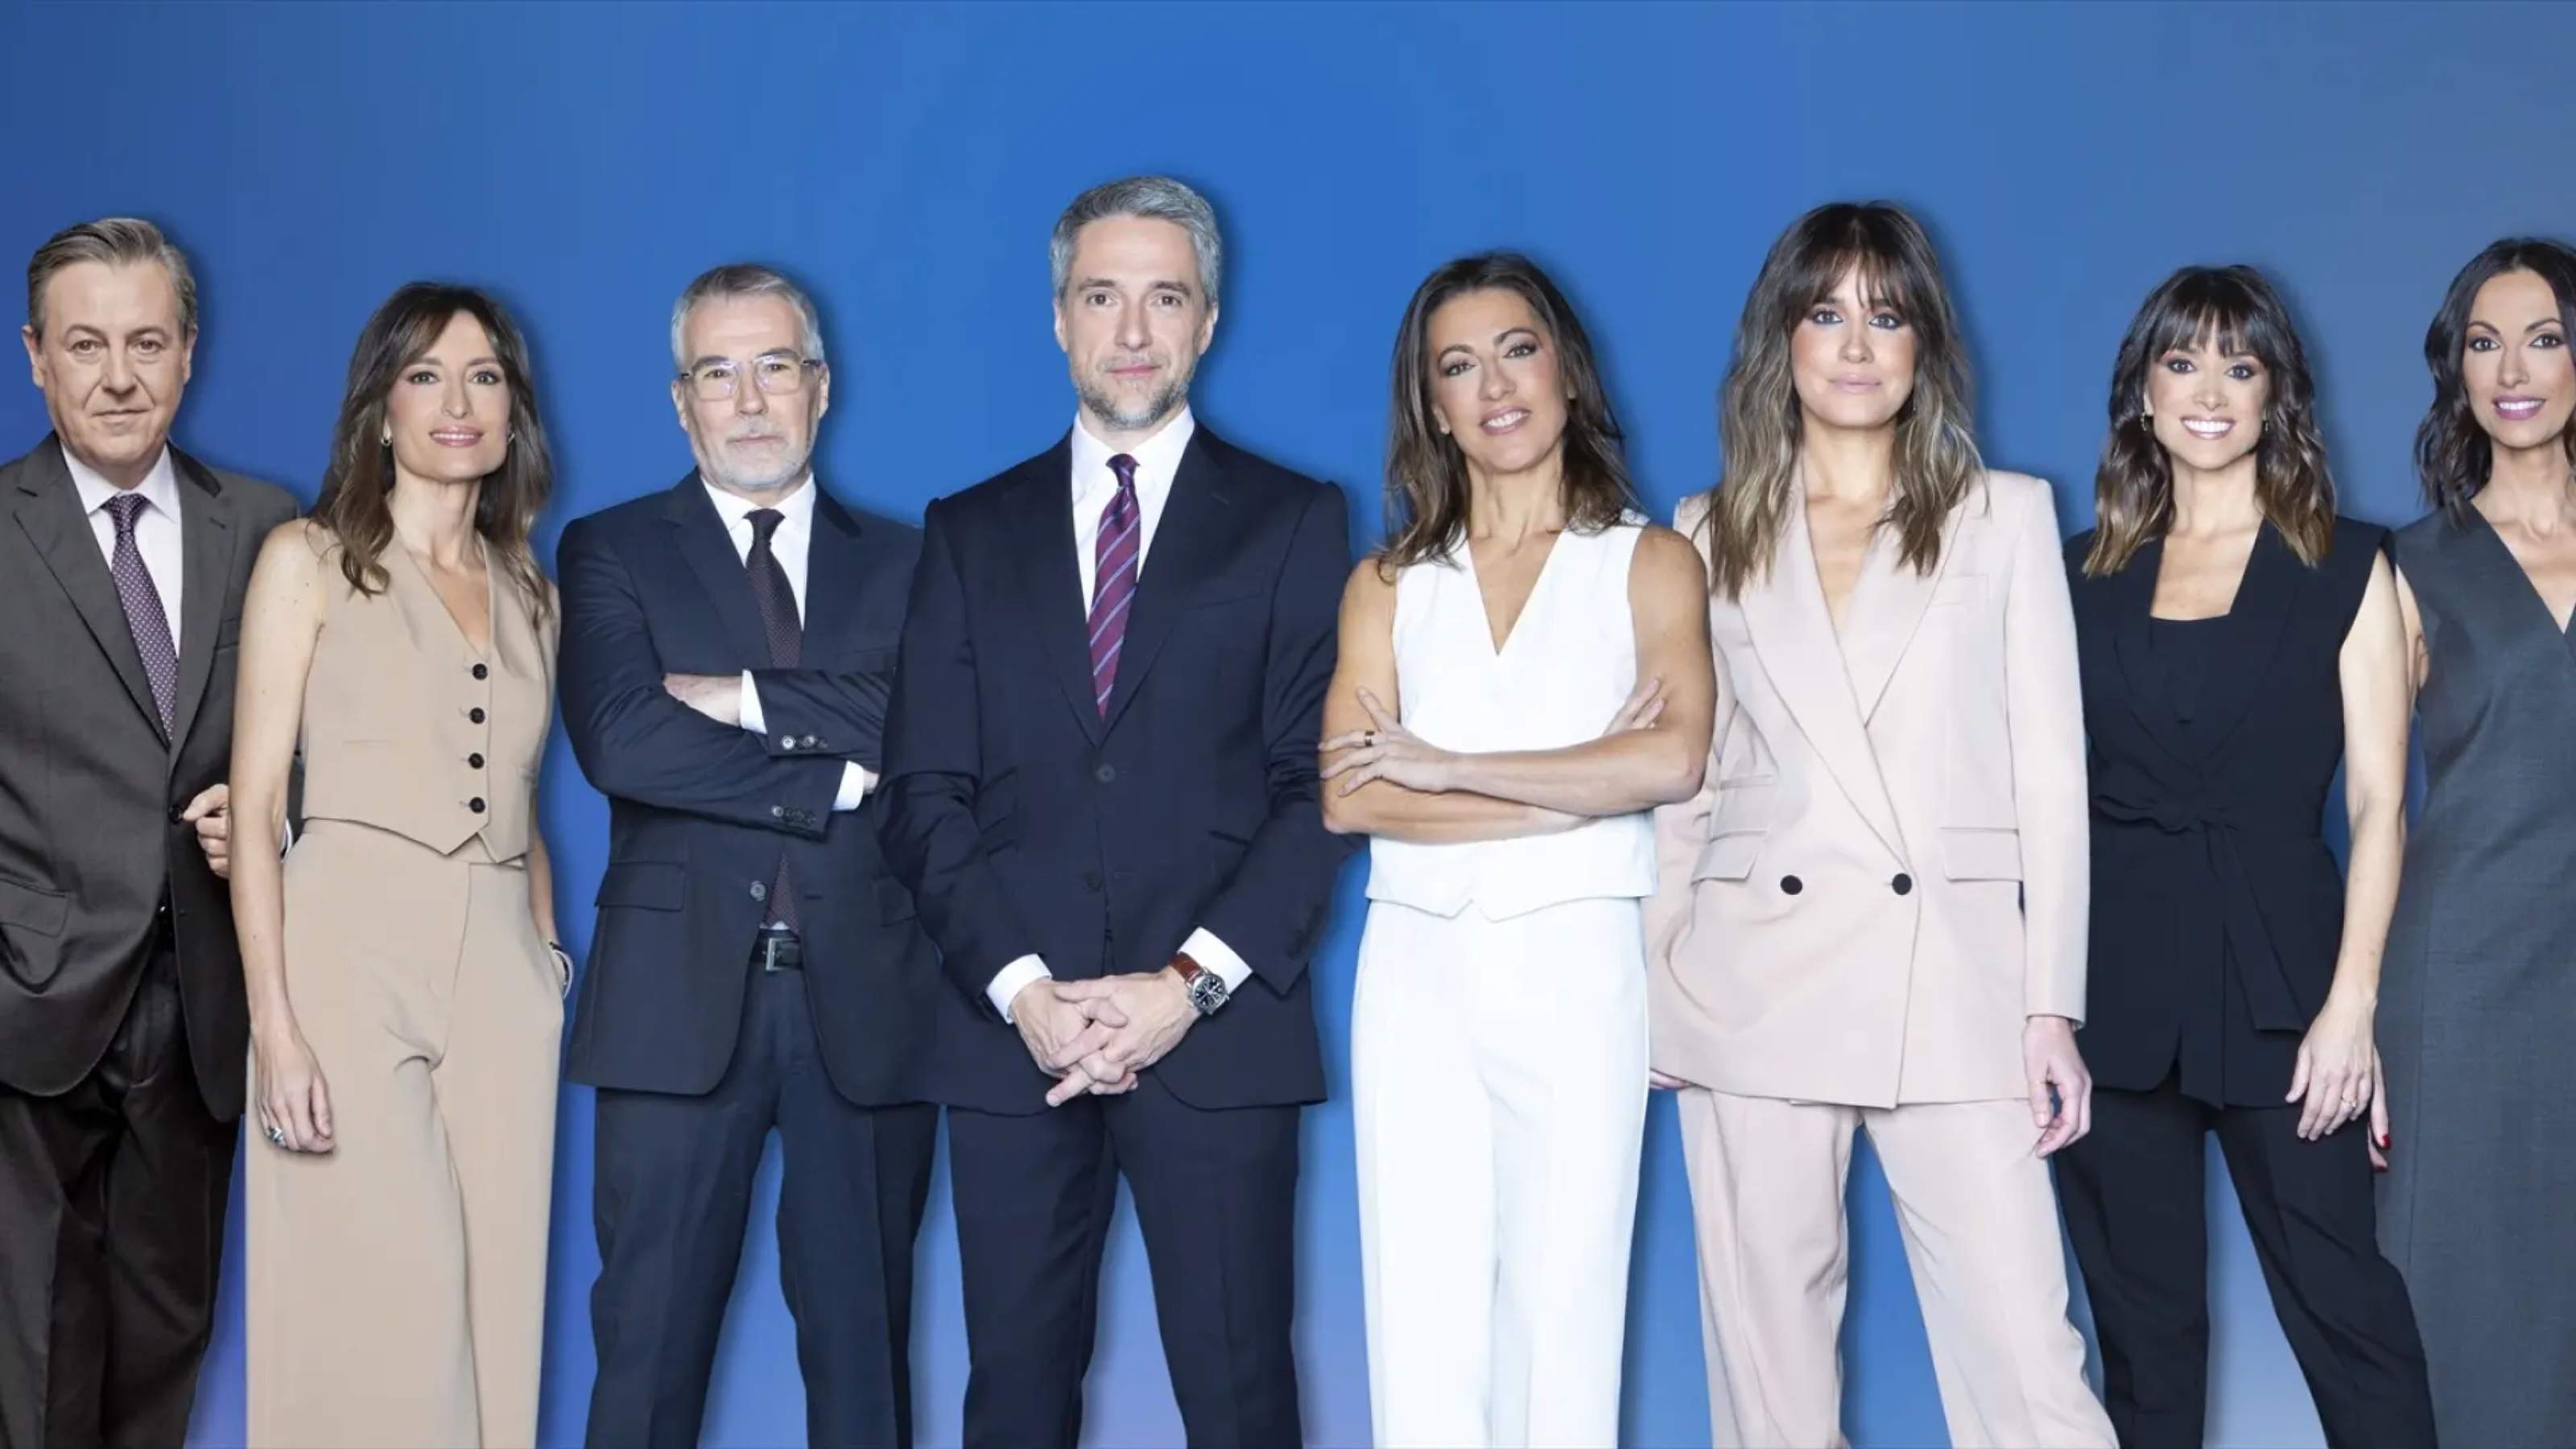 La presentadora más solidaria de Telecinco estrena nuevo programa: giro estratégico inédito